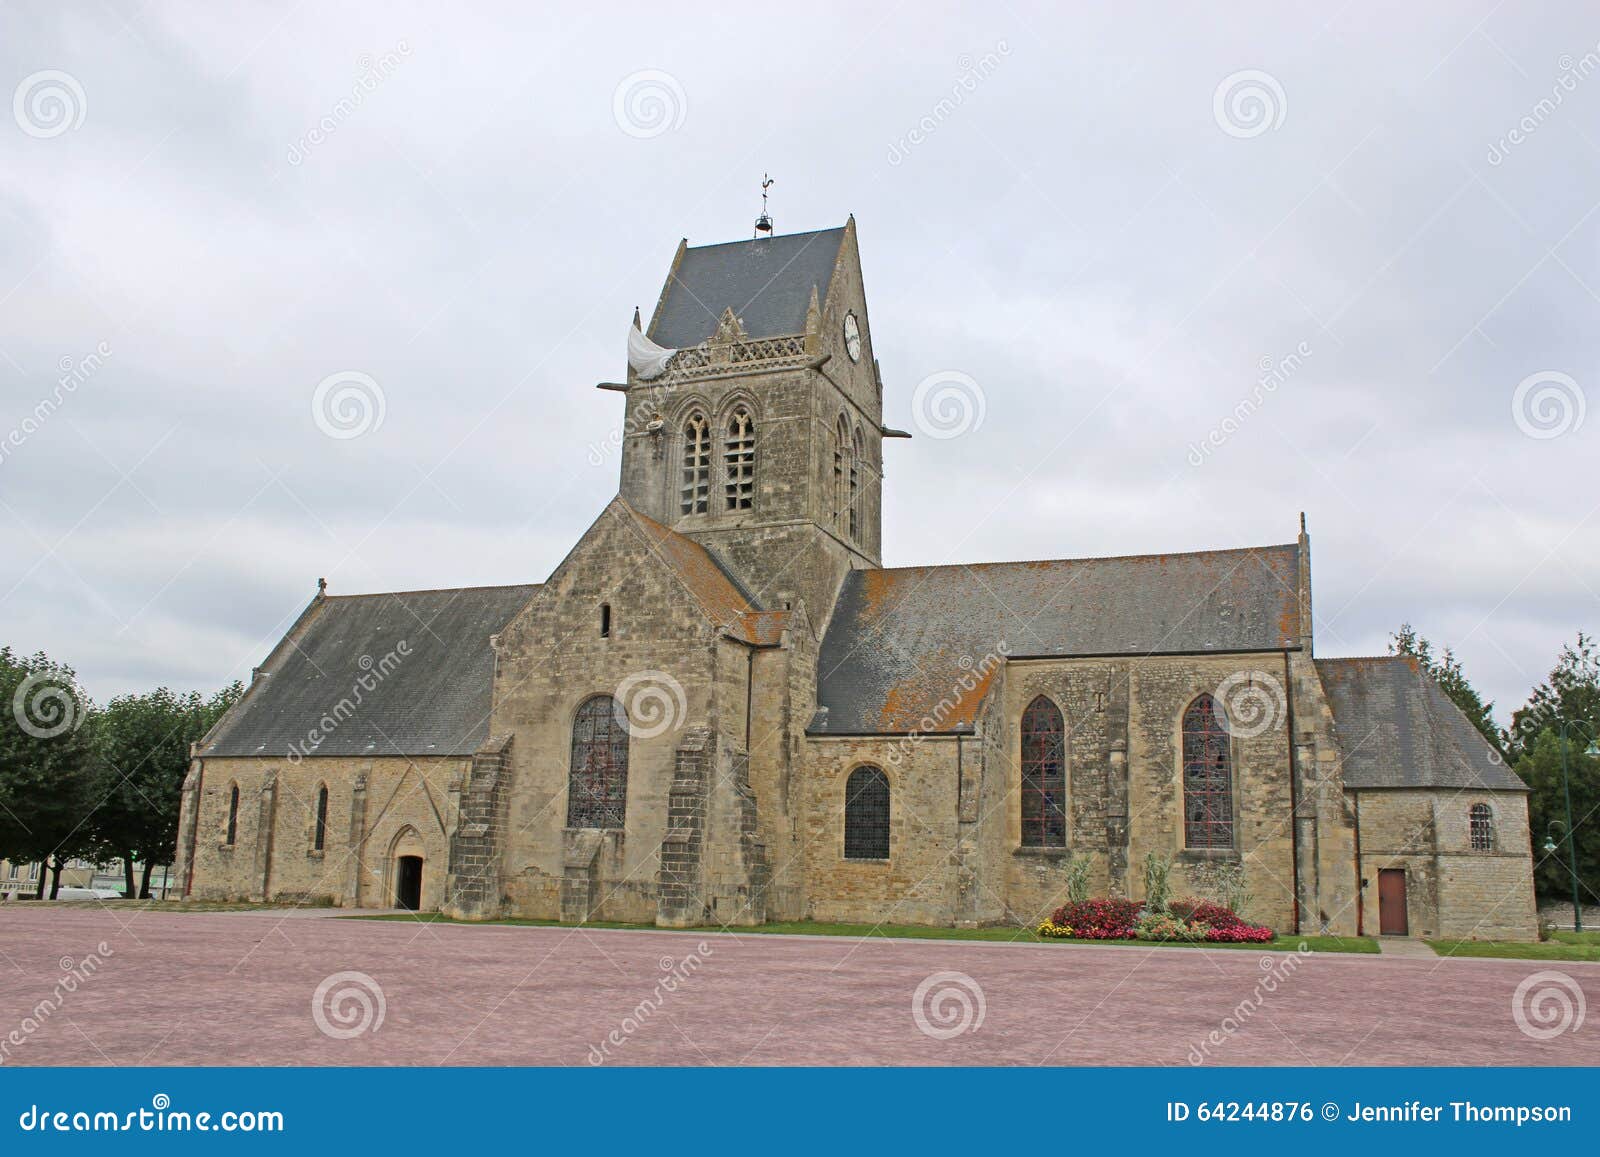 sainte-mÃÂ¨re-Ãâ°glise church, france